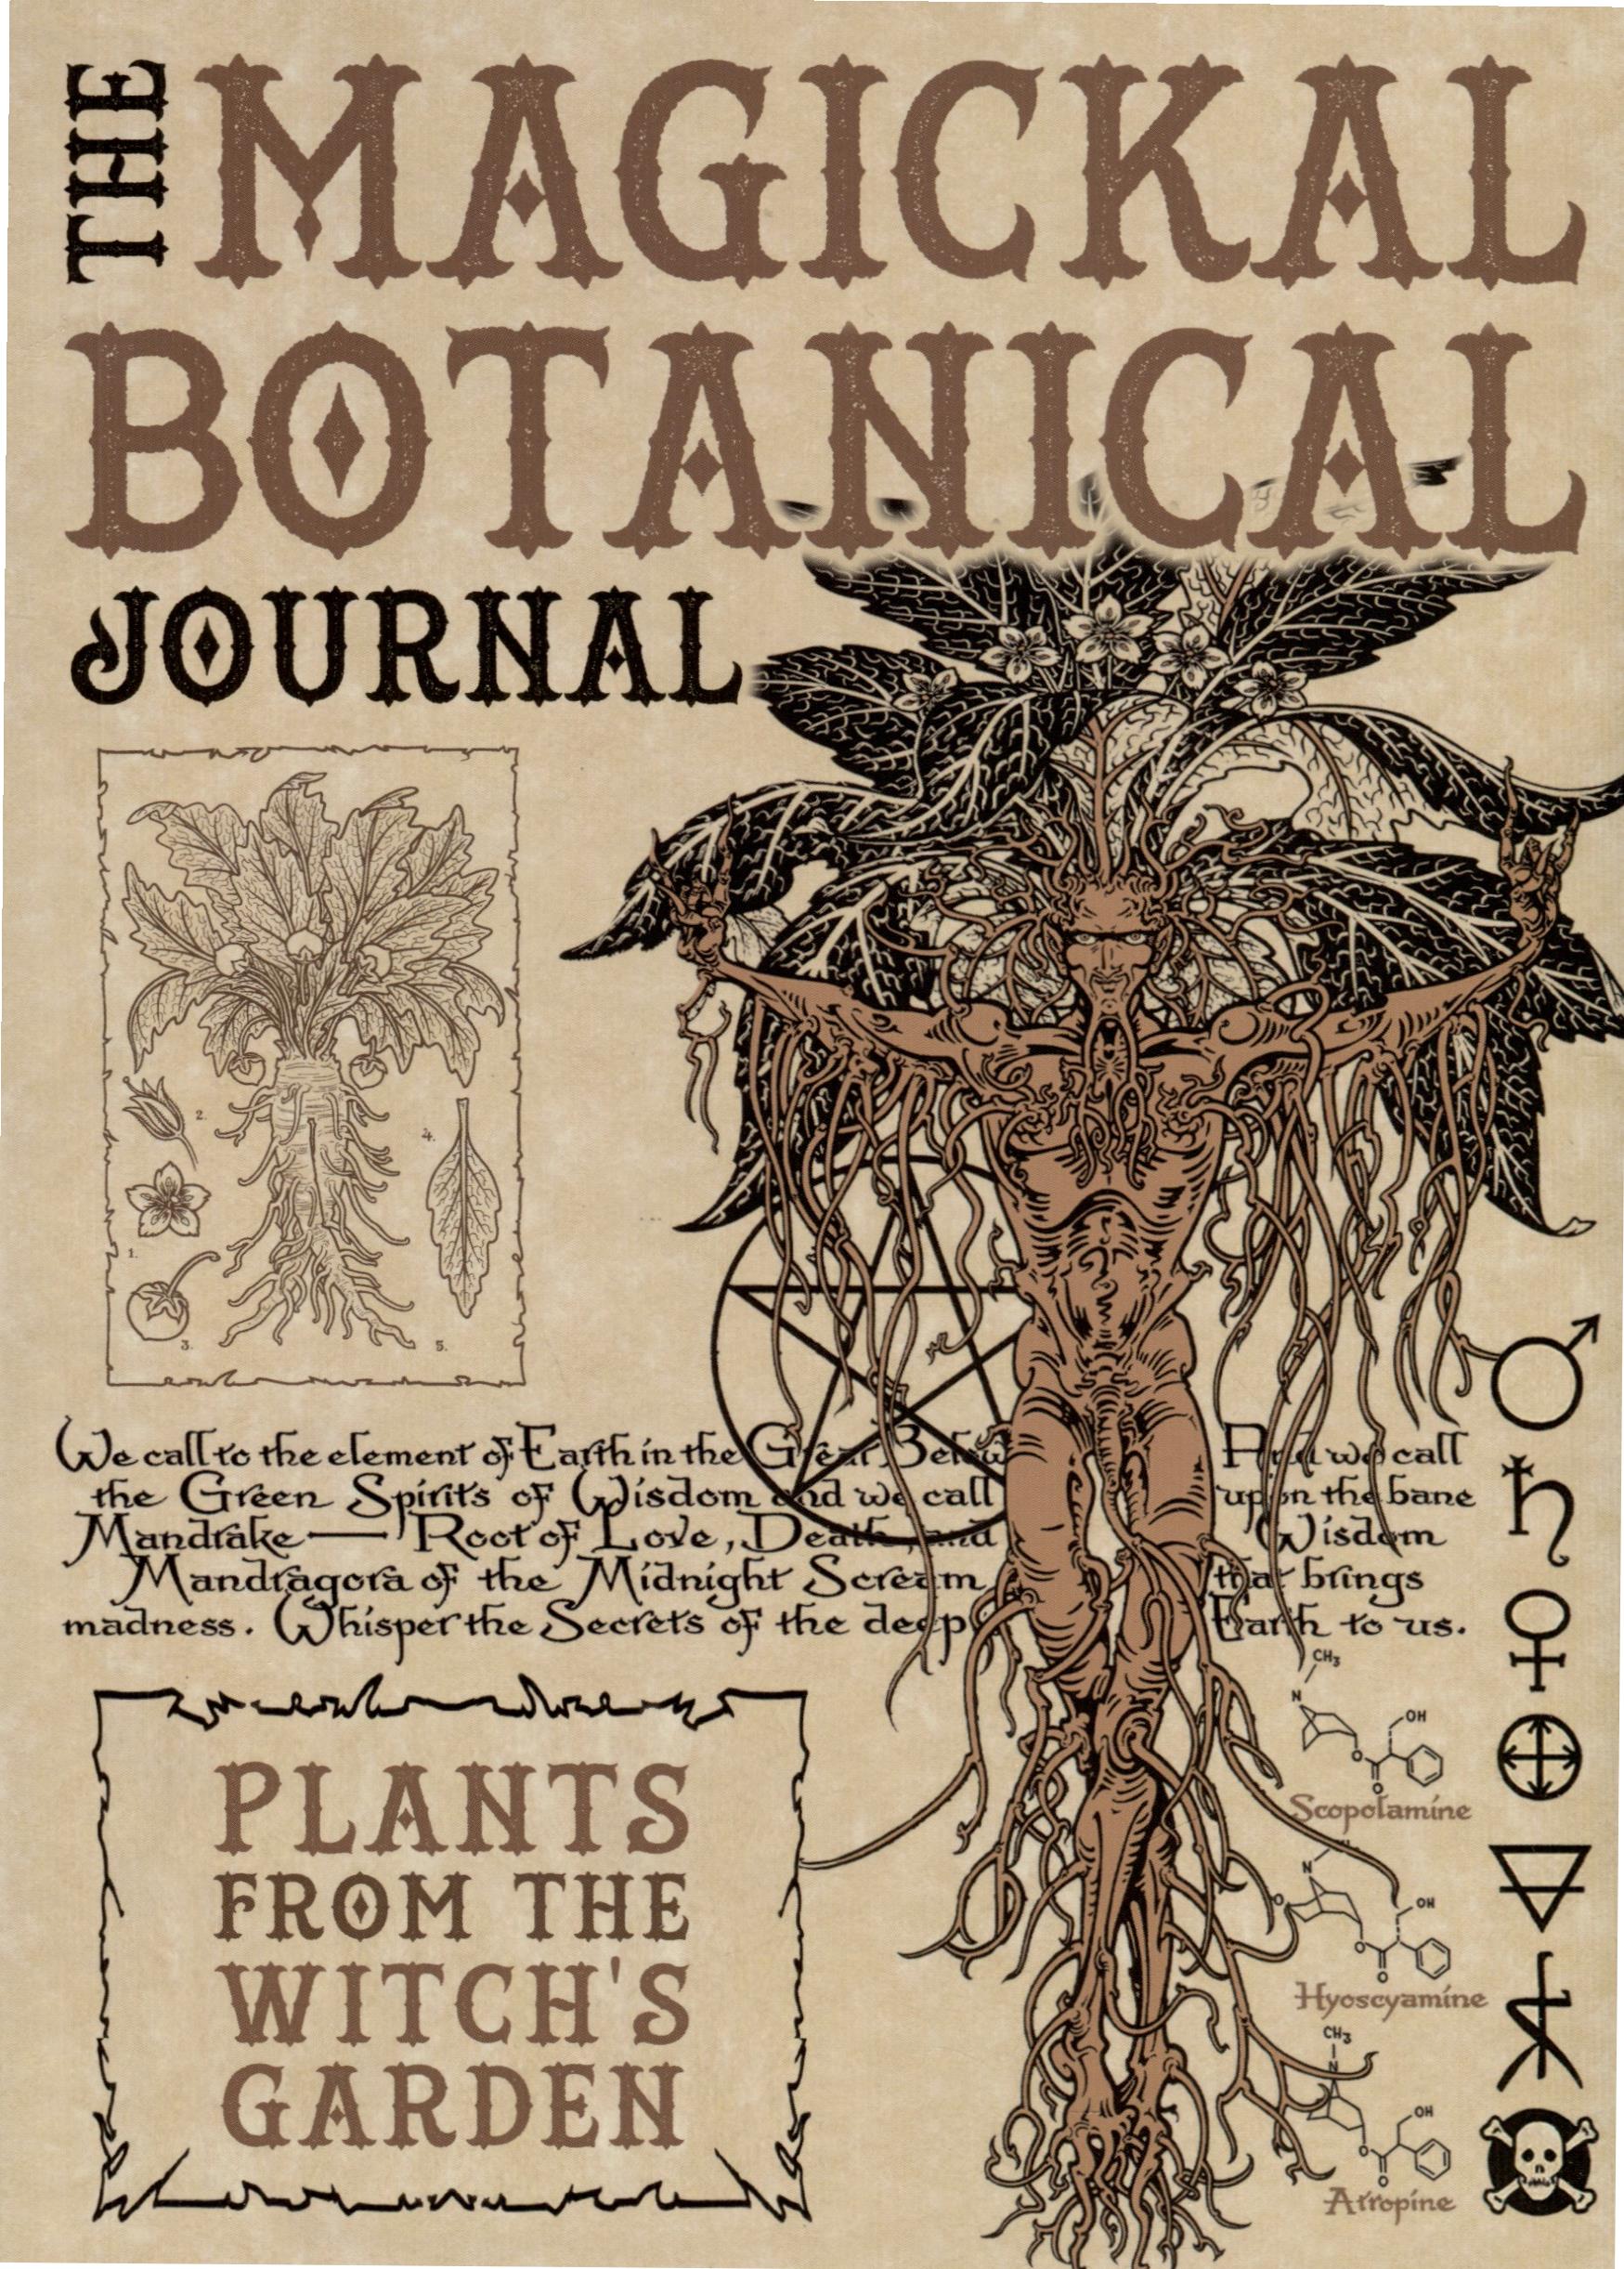 Волшебный ботанический журнал / The Magical Botanical - Journal миллер максин пензак кристофер оракул волшебный ботанический